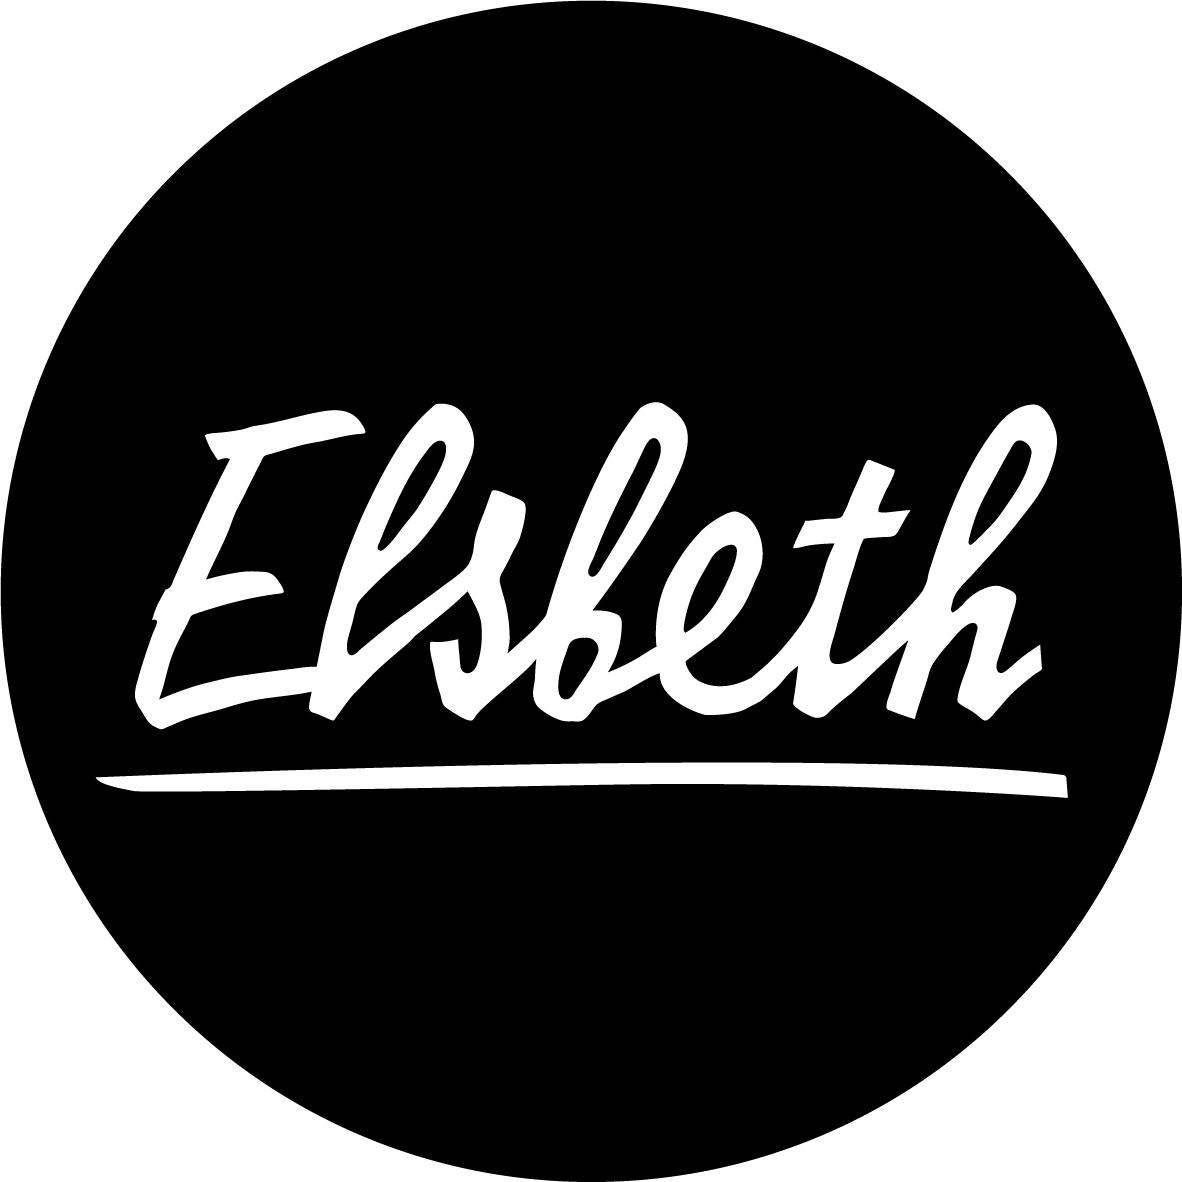 Elsbeth in Kassel - Logo